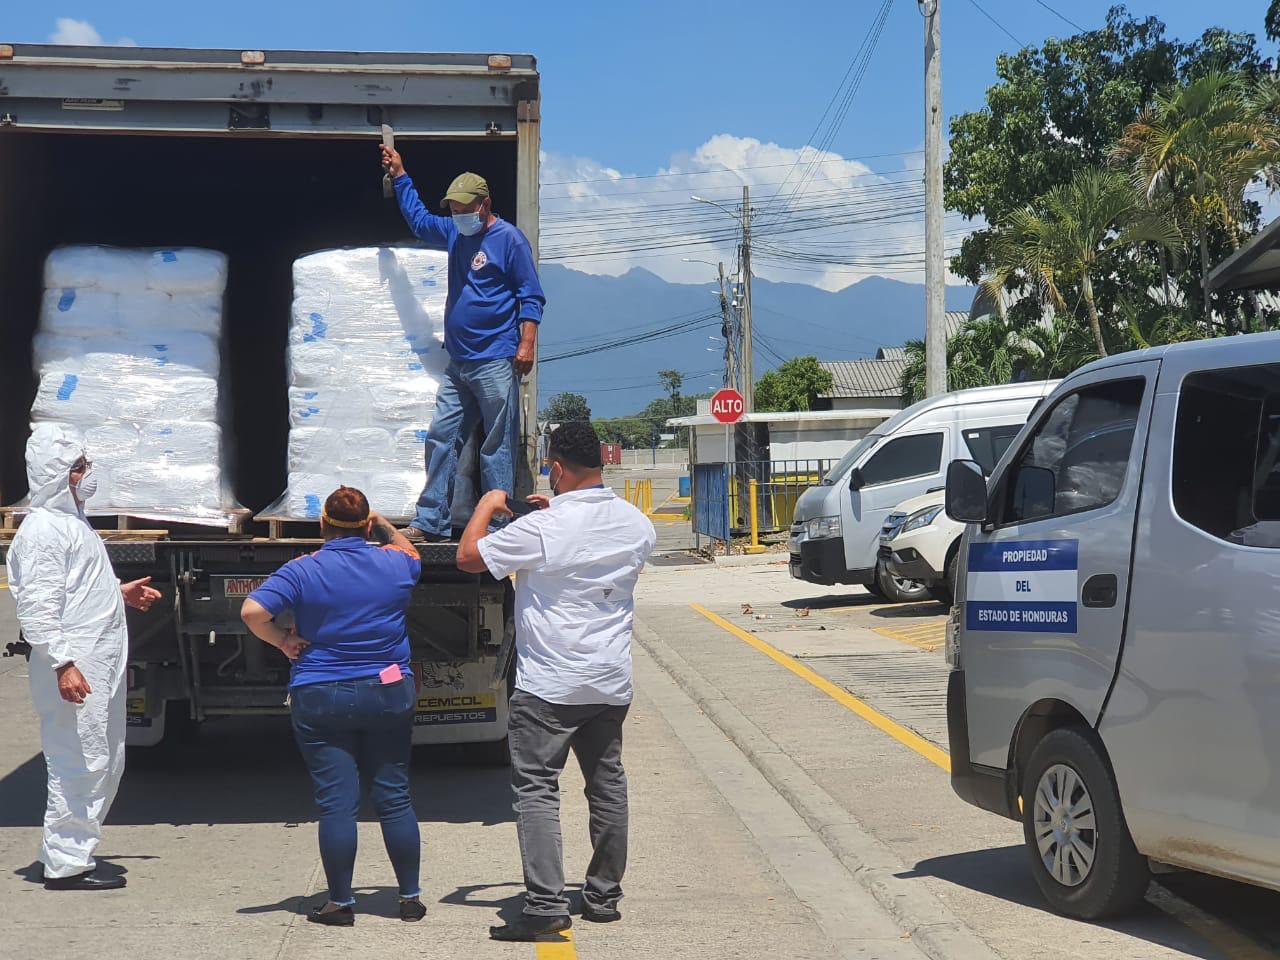 Aduanas Honduras facilita donación de más de 30 mil insumos y equipo de bioseguridademergencia nacional por Covid-19